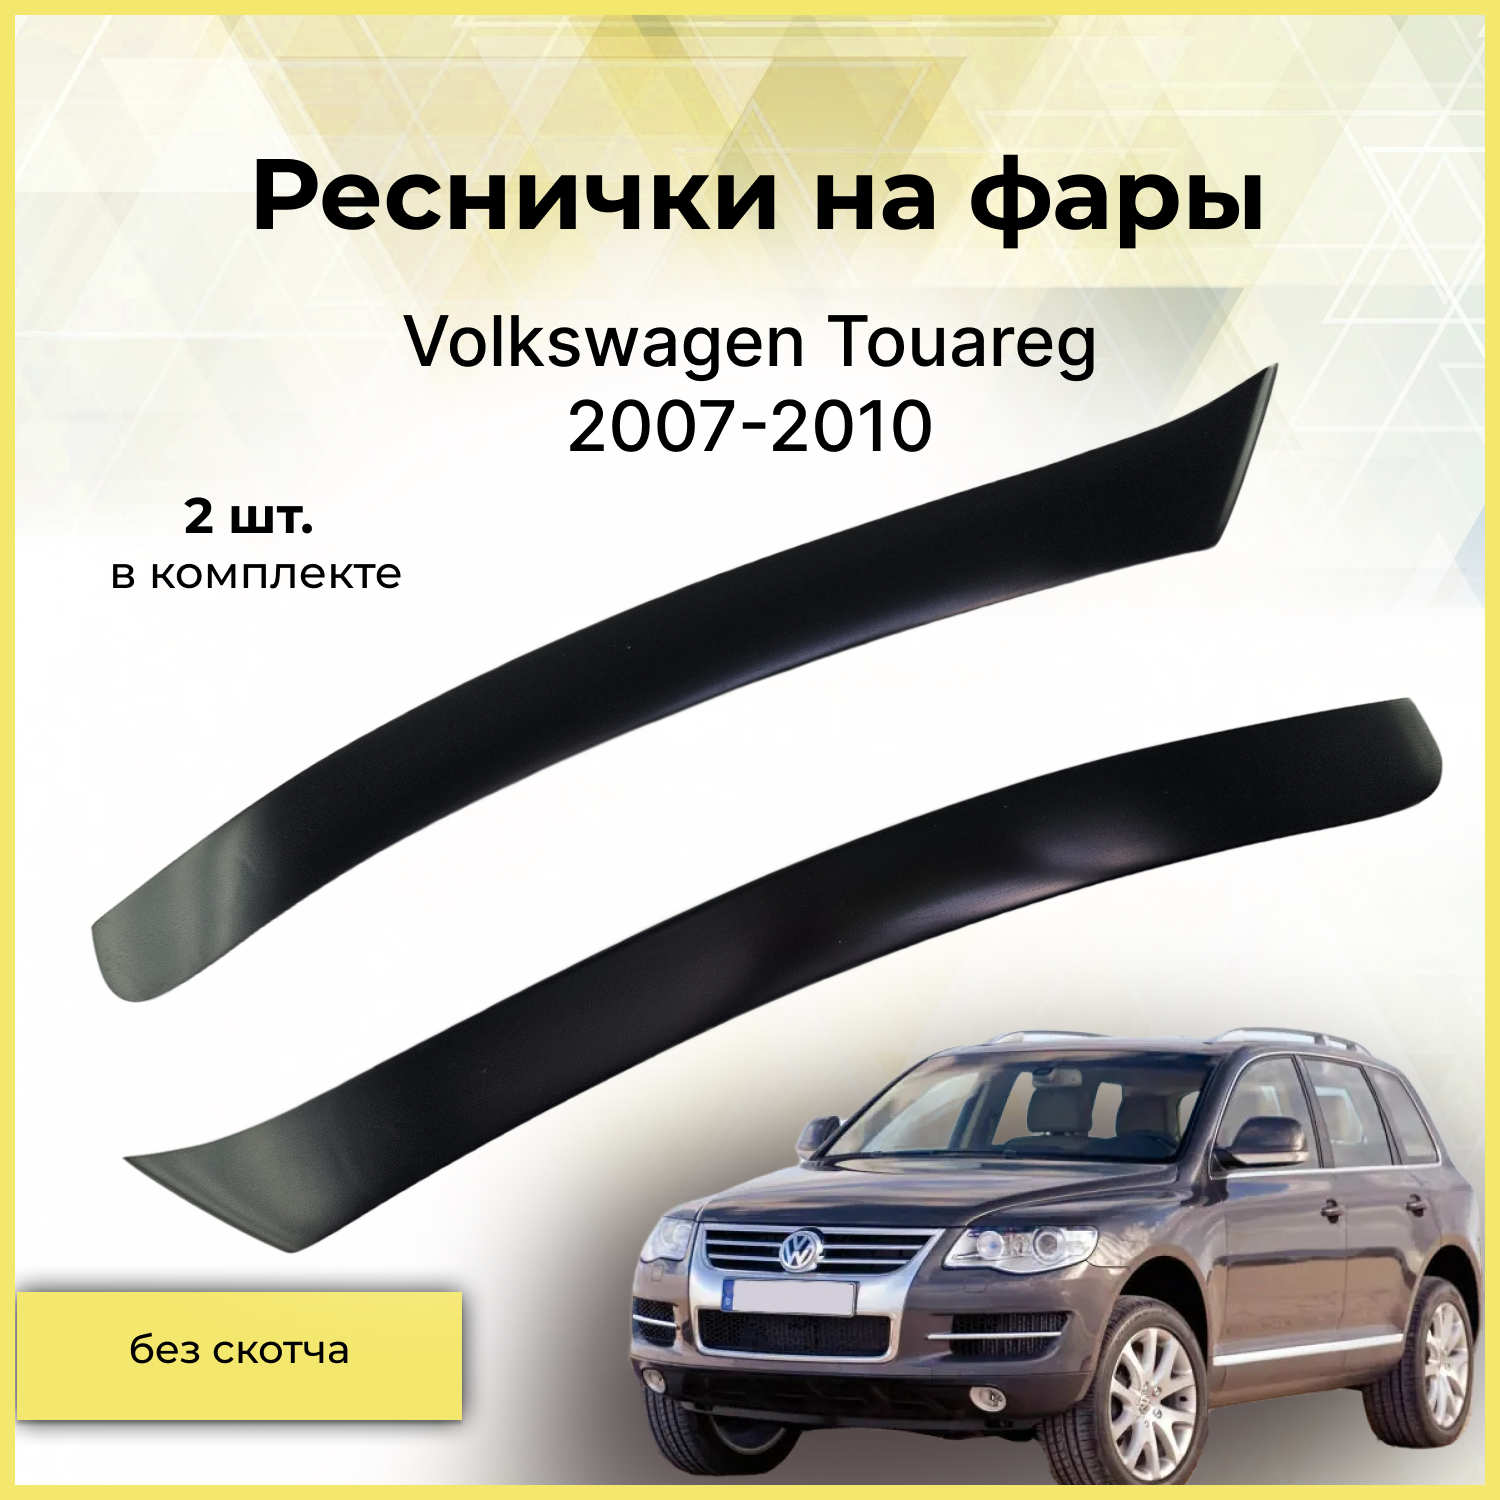 Реснички на фары / Накладки на передние фары для Volkswagen Touareg (Фольксваген Туарег) 2007-2010